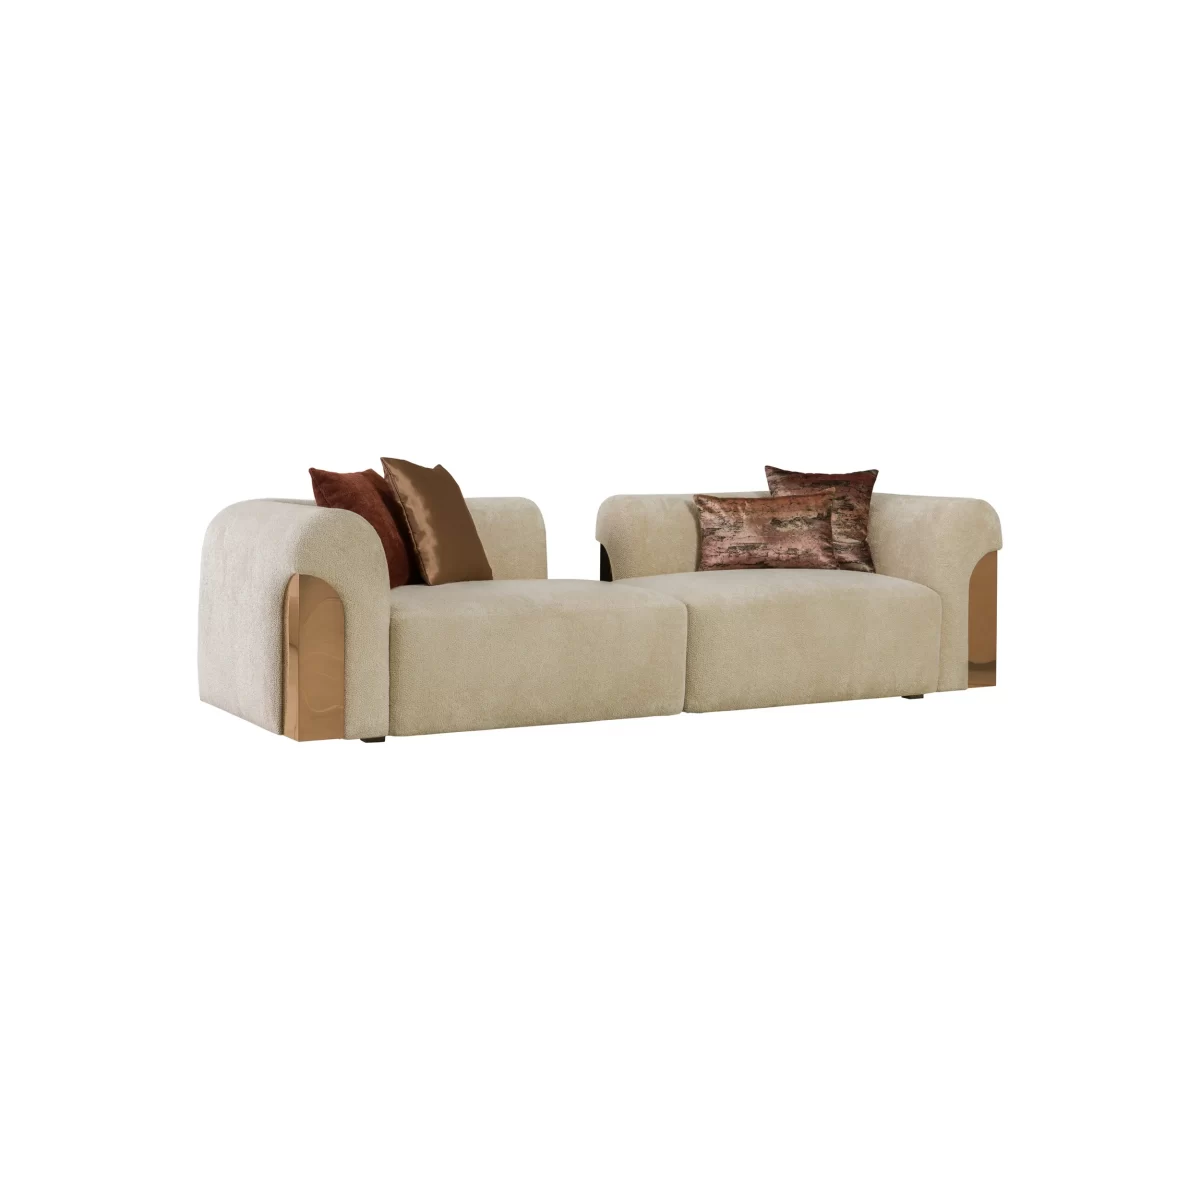 Aerro Sofa Set Premium Living Room Furniture 4